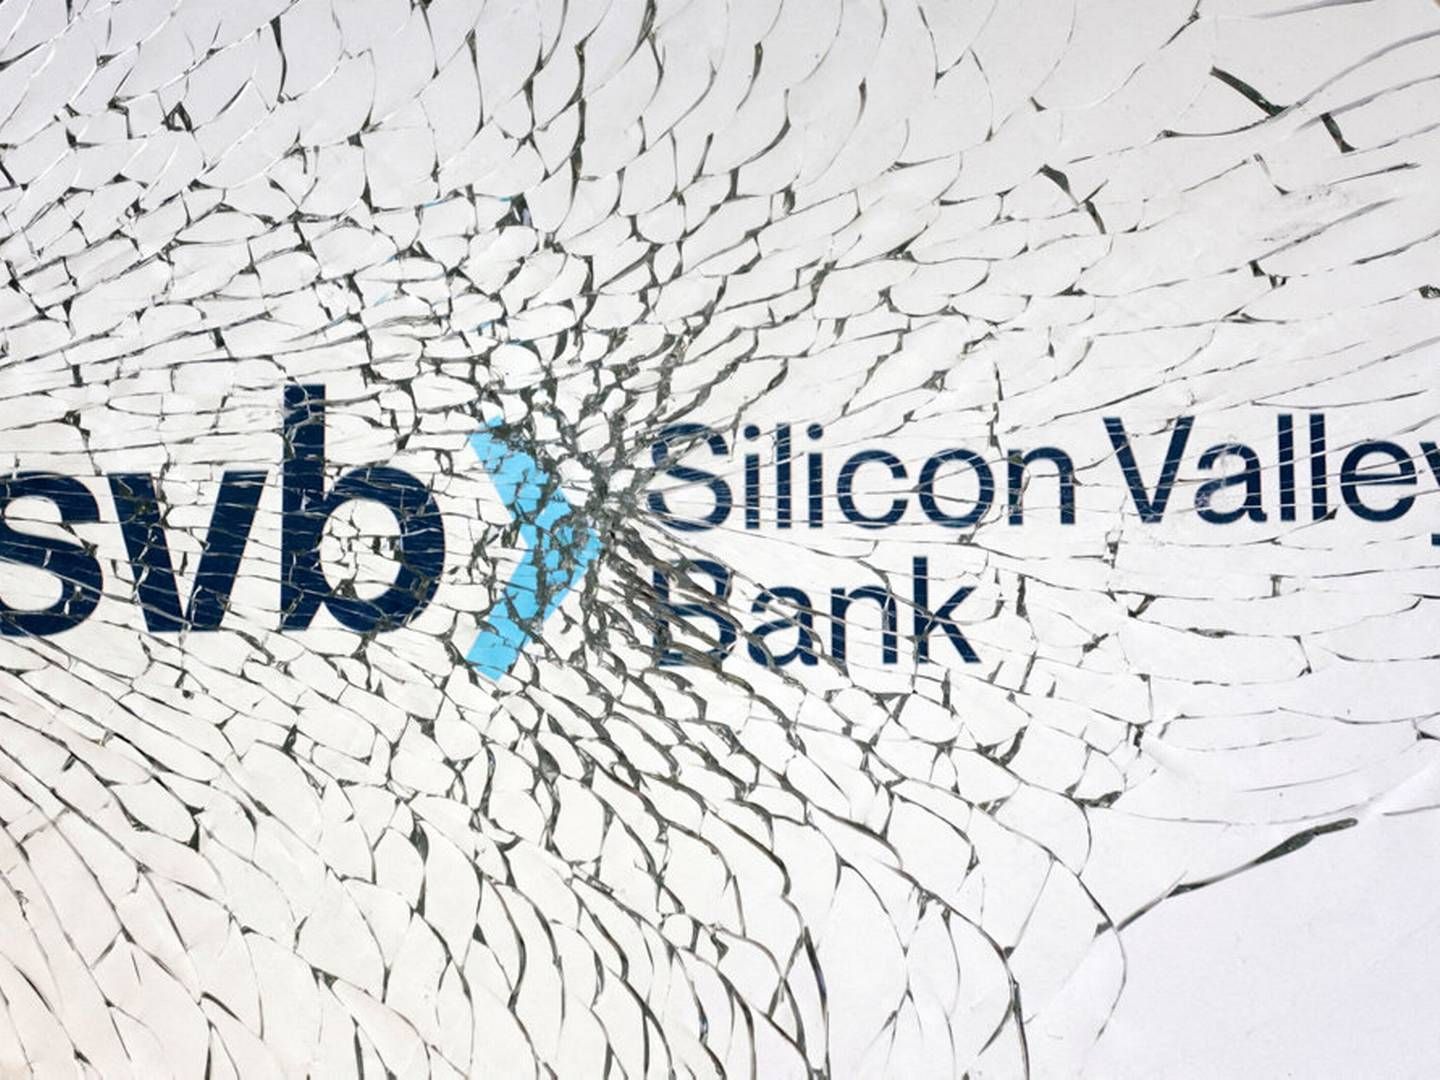 Silicon Valley Bank kollapsede, efter at frygt for bankens finansielle helbred fik kunder til hastigt at trække deres penge ud. | Foto: Dado Ruvic/Reuters